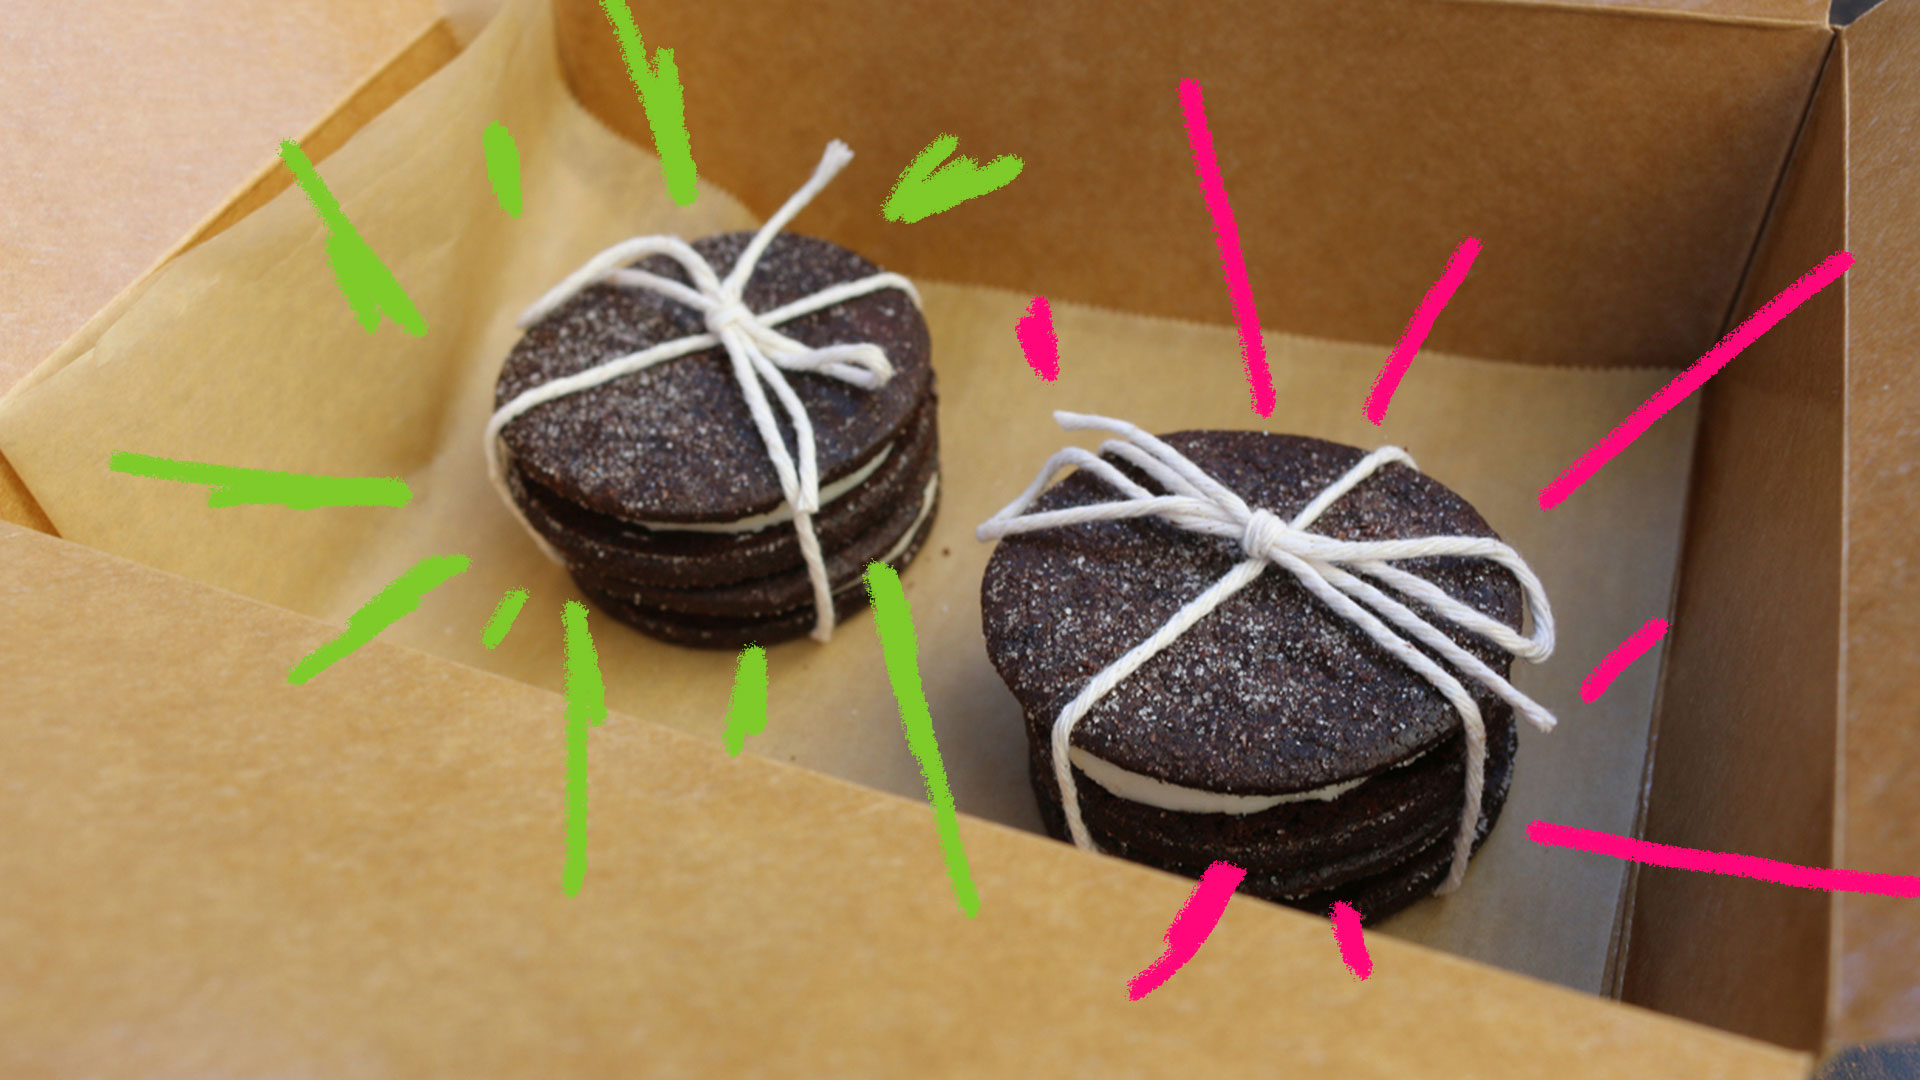 Biscoito recheado caseiro: foto de dois biscoitos recheados embrulhados com barbante dentro de uma caixa da papelão de presente.